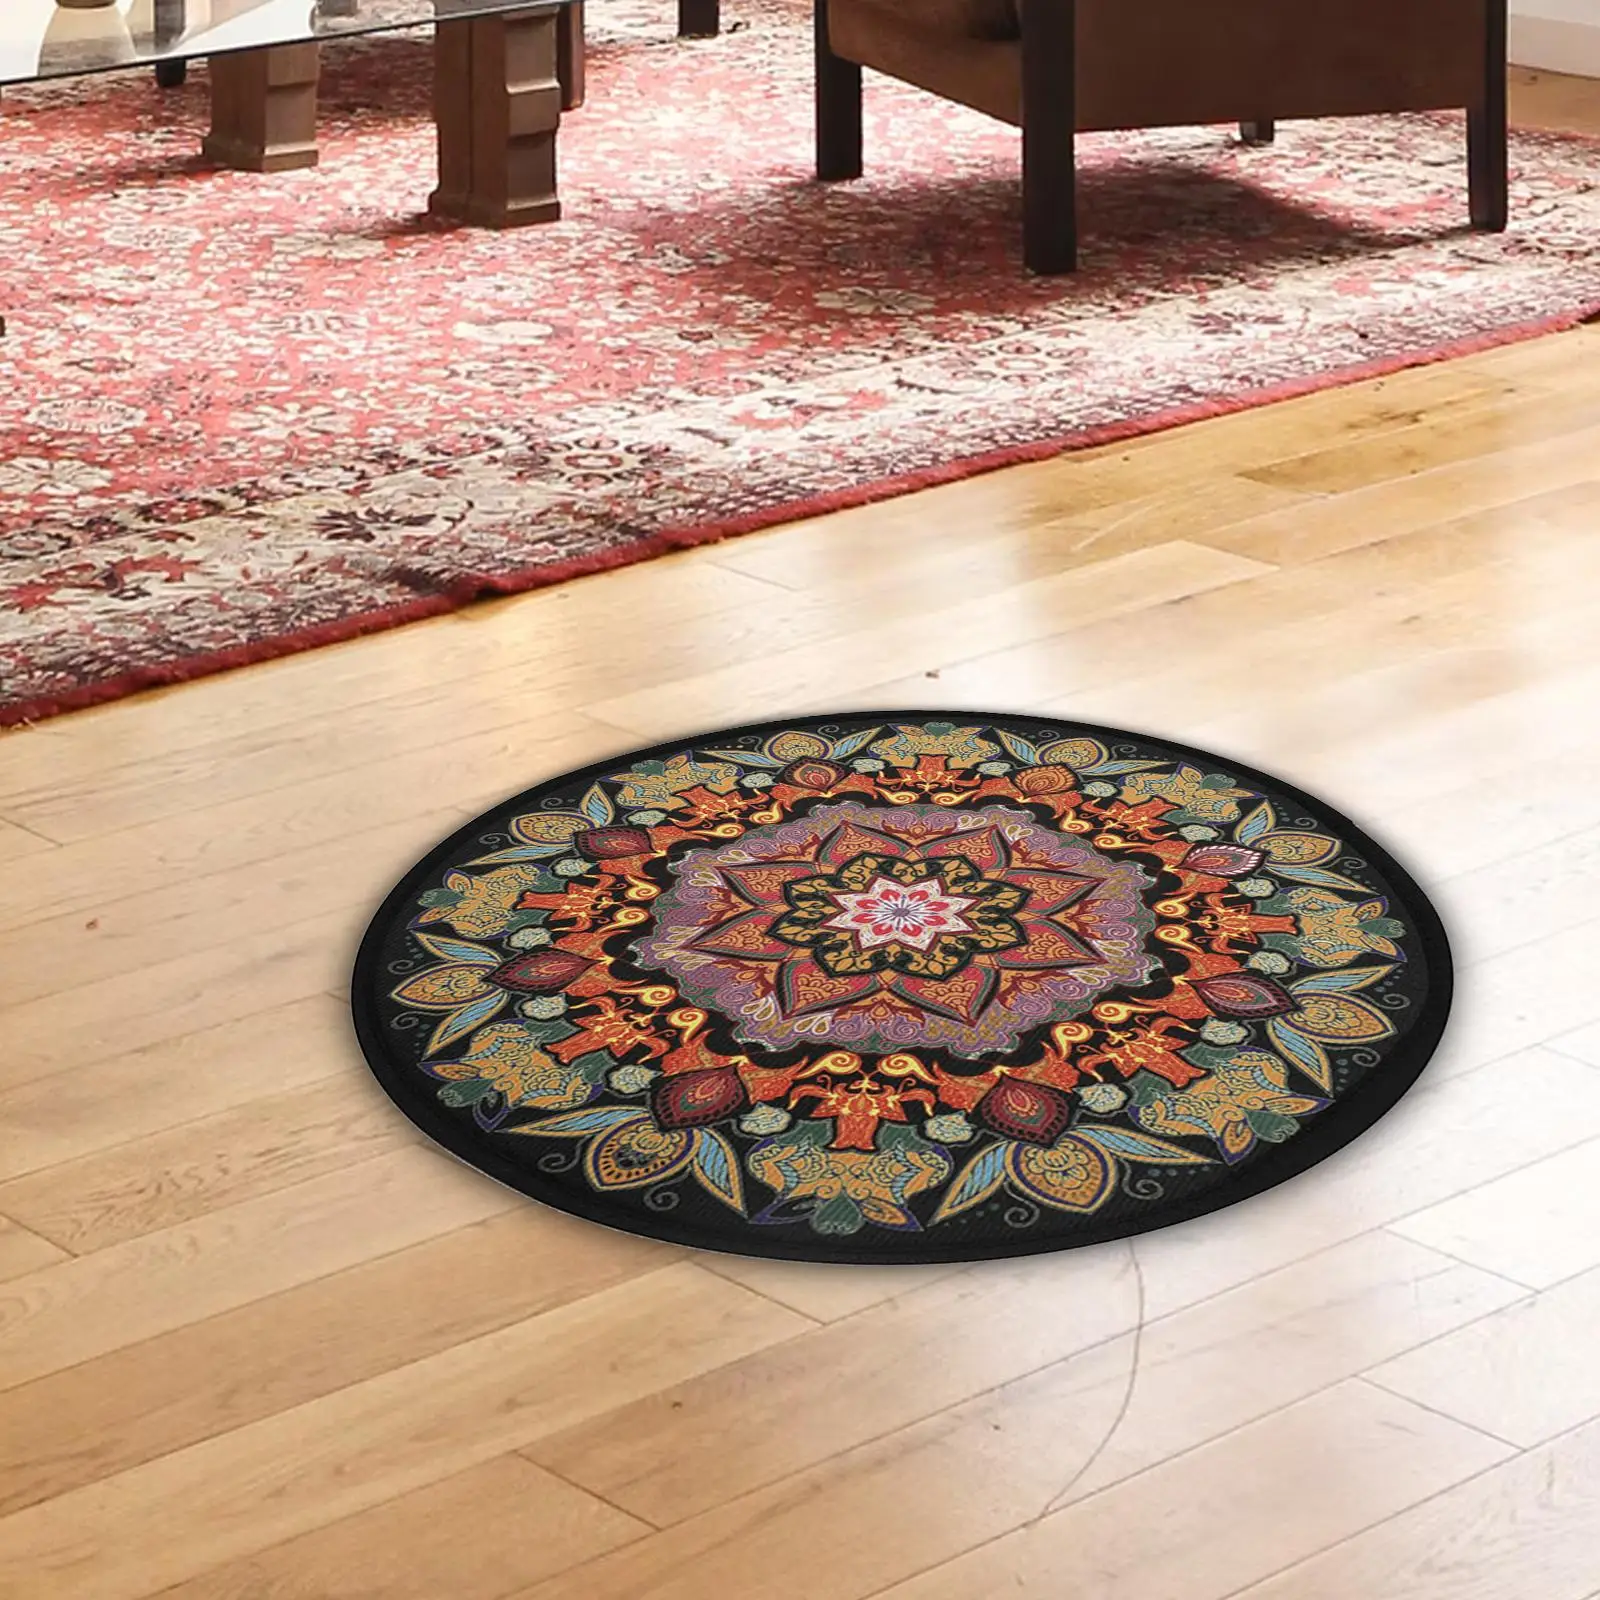 Round yoga floor mat with mandala pattern, meditation mat, washable